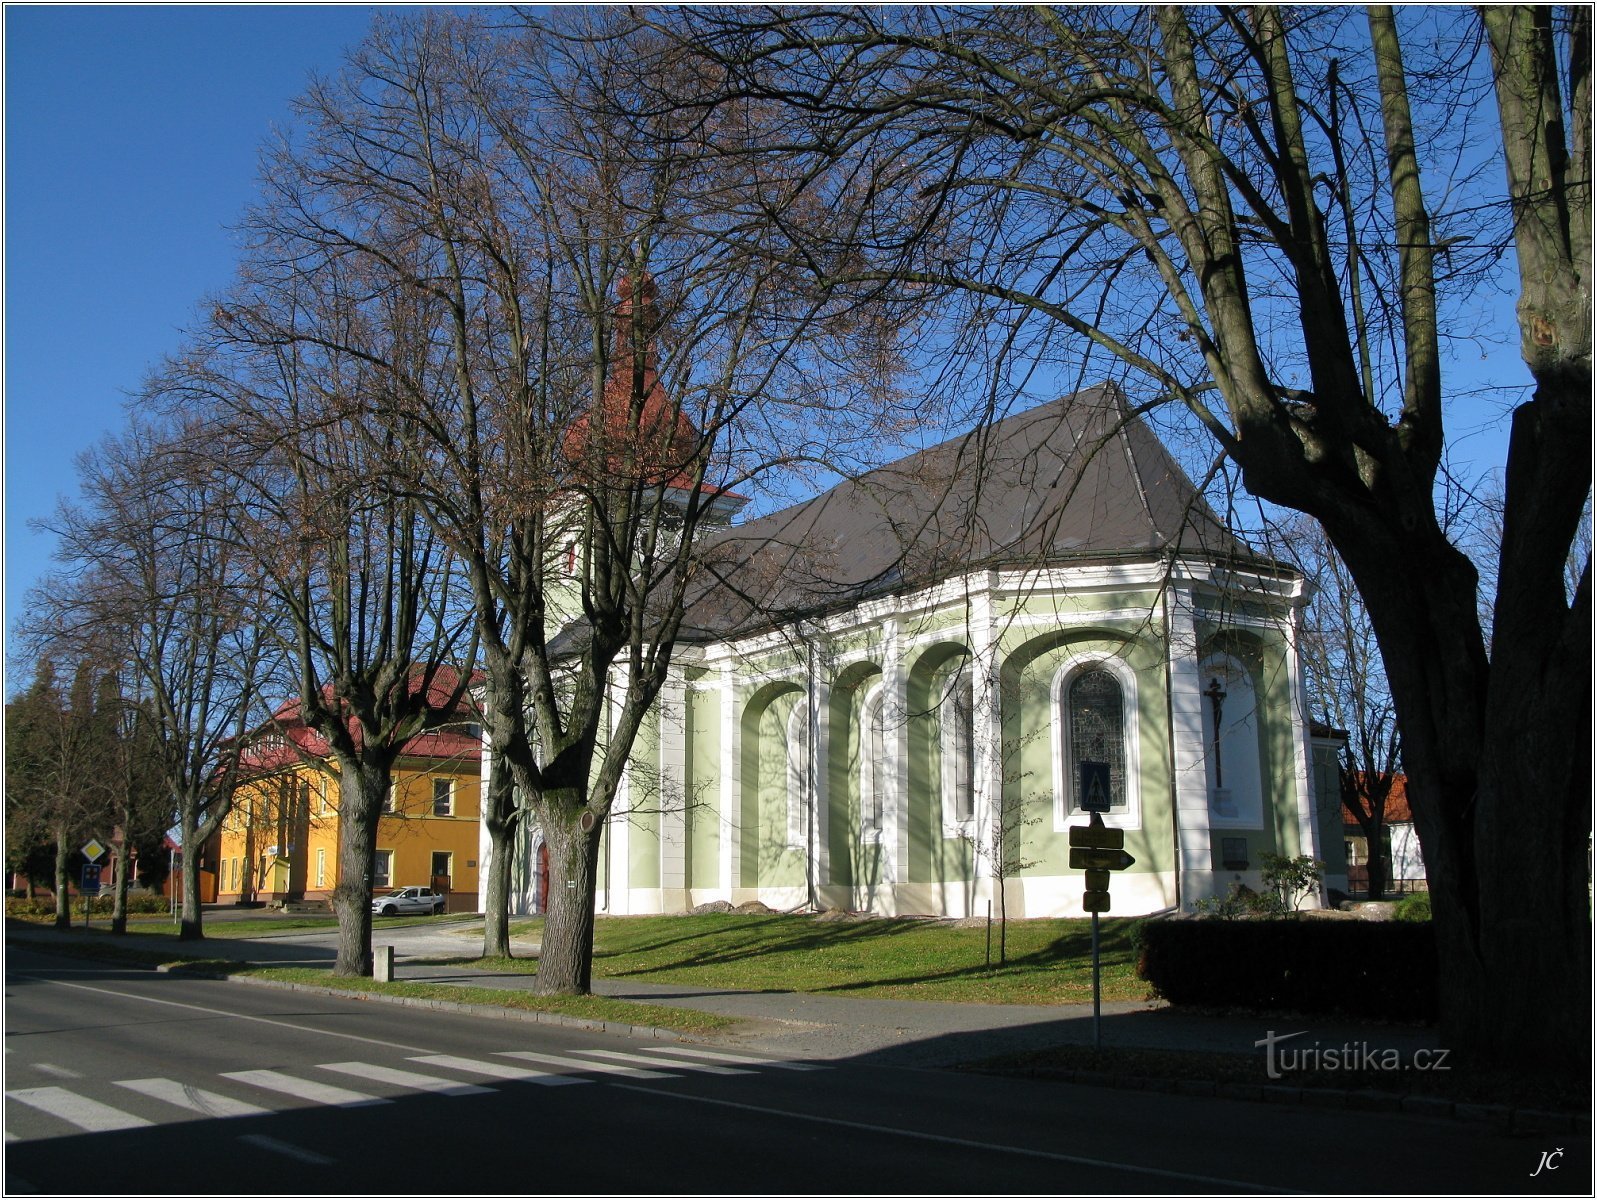 3-Église sur la place de Seč